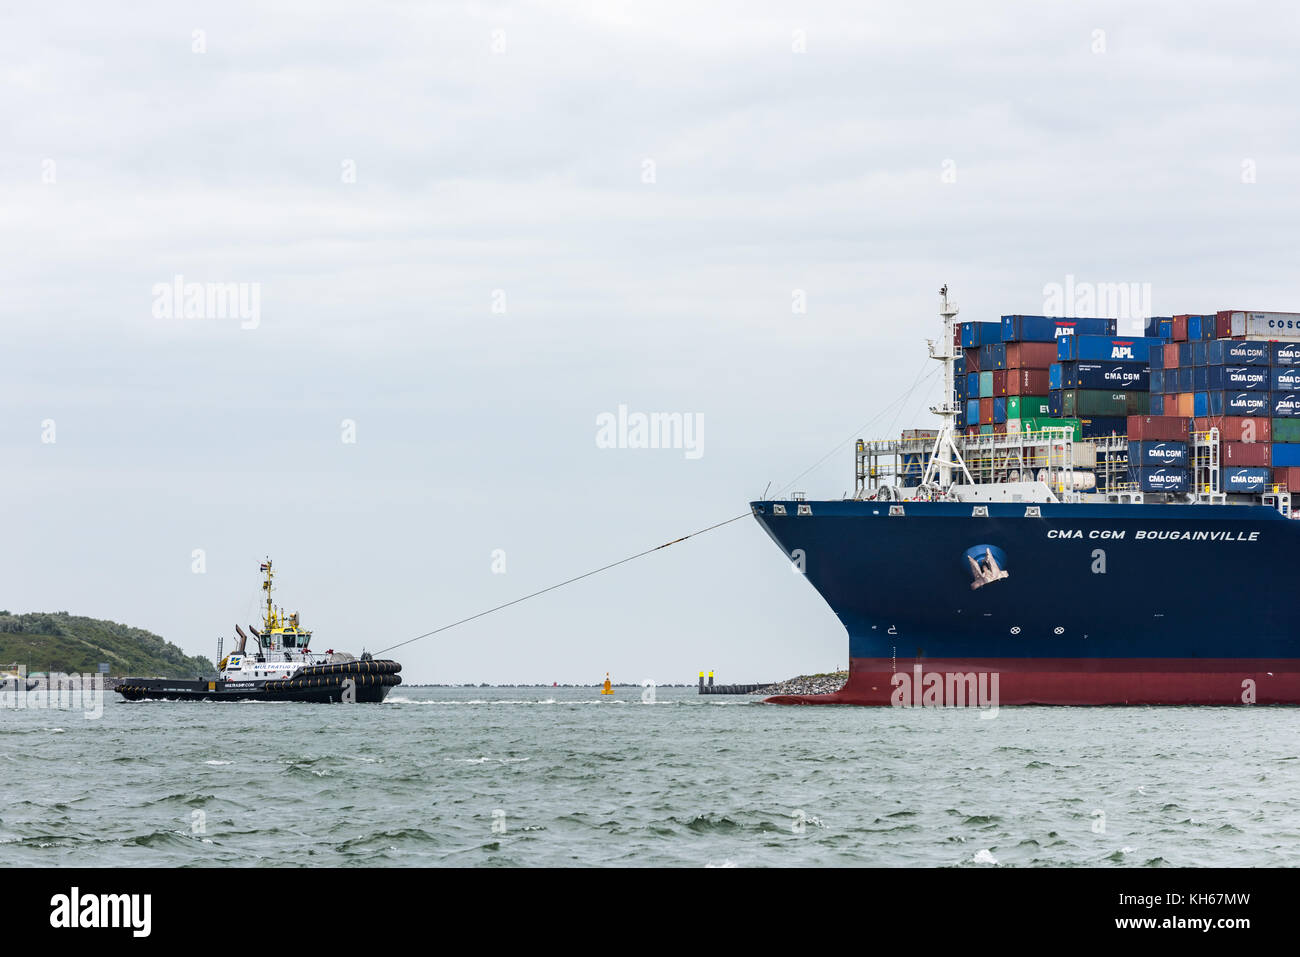 Rotterdam, Paesi Bassi - 12 giugno 2017: un rimorchiatore porta la ultra grande nave portacontainer CMA CGM bougainville in porto come si arriva a th Foto Stock